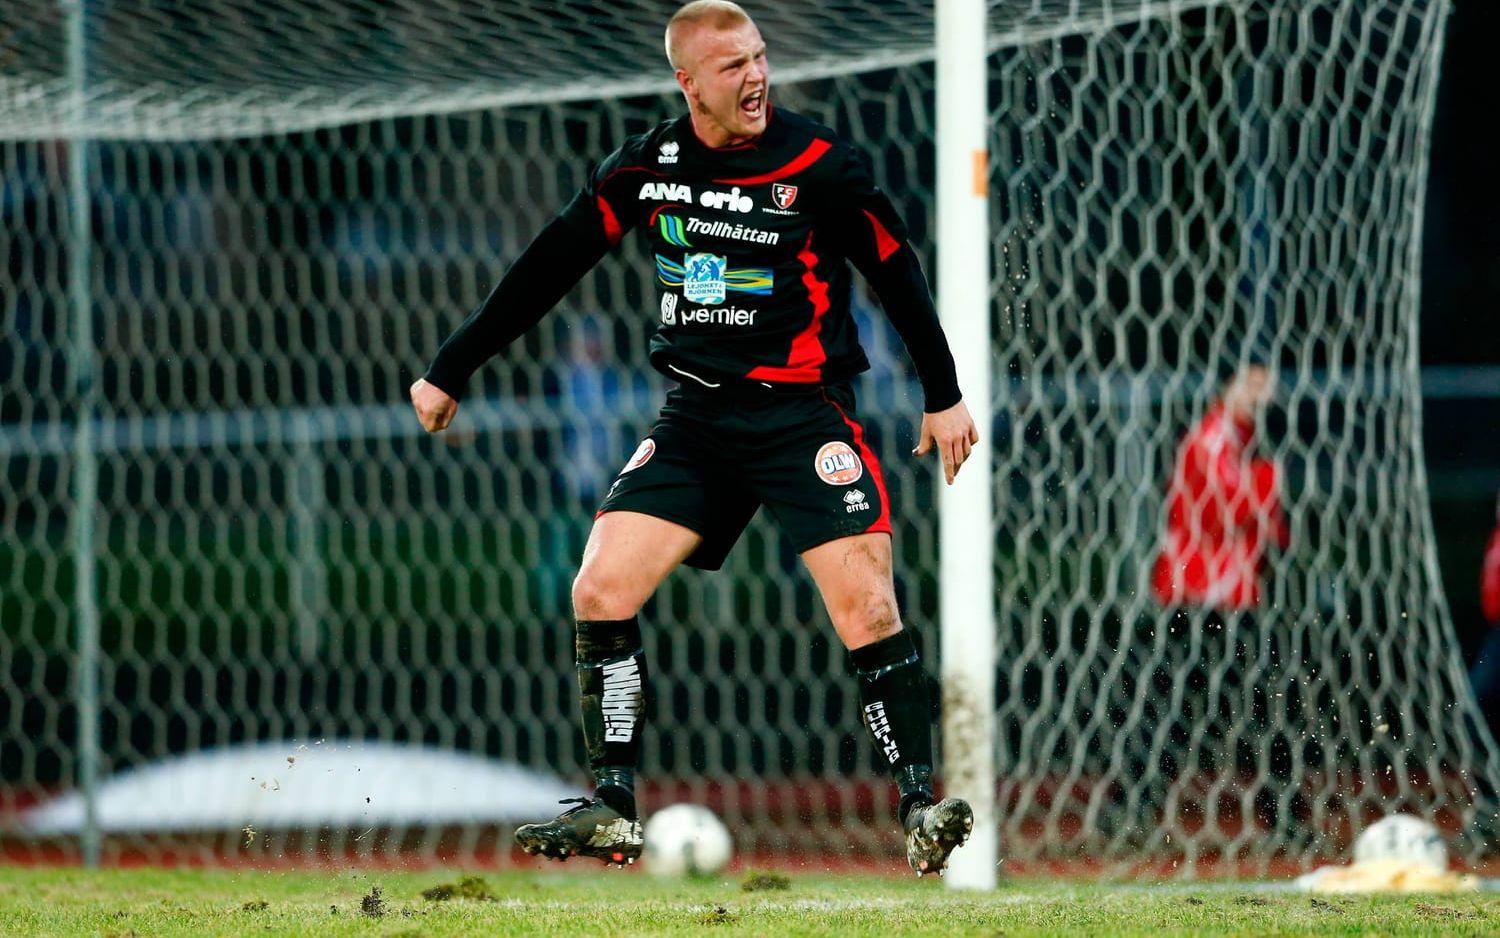 Jonathan Gustafsson skriker ut efter att hans 3-2-mål mot IFK Göteborg blivit avvinkat för offside. Bild: Bildbyrån